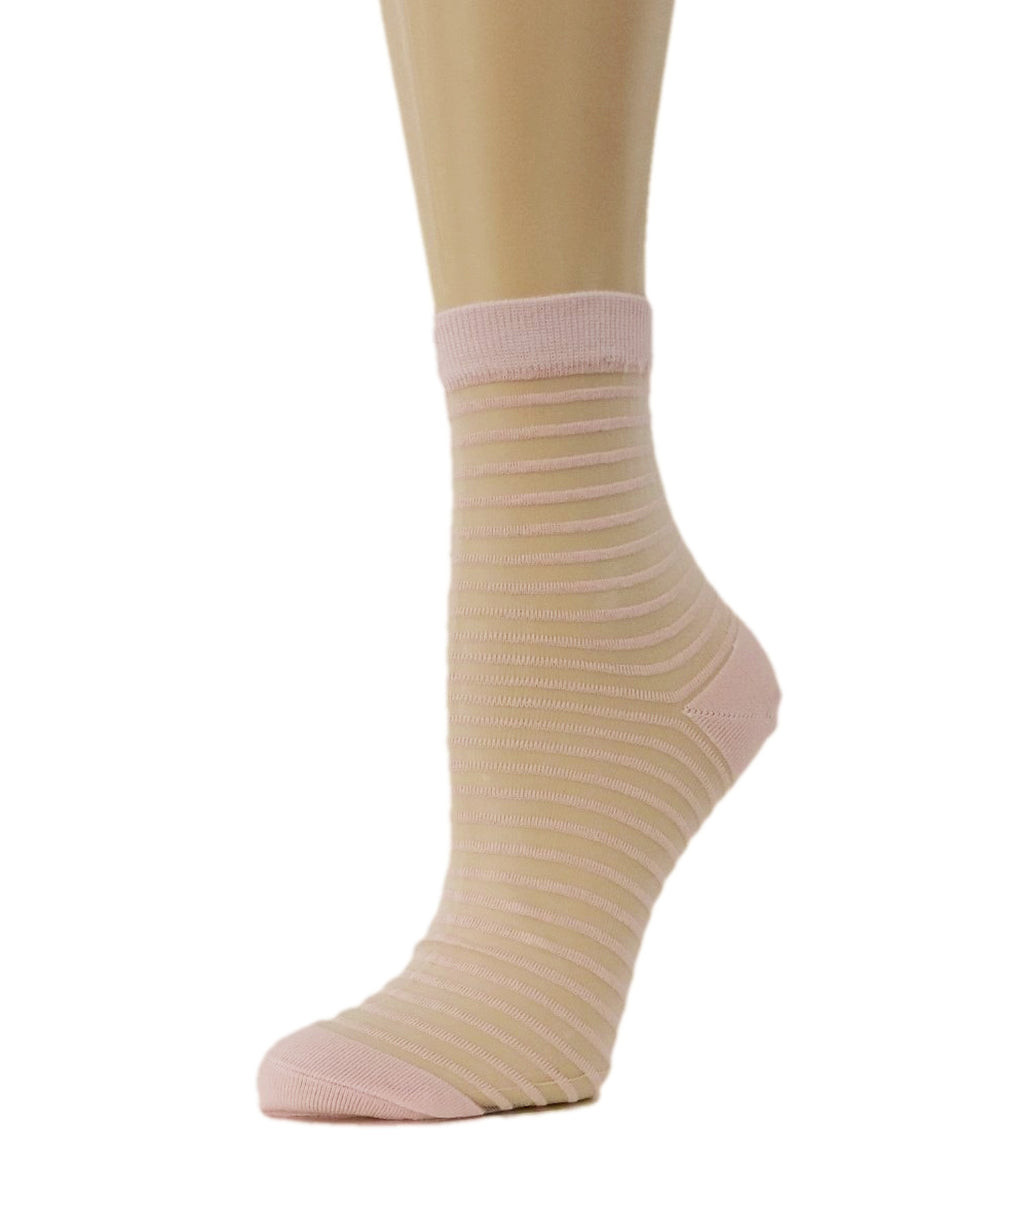 Sweet Pink Striped Sheer Socks - Global Trendz Fashion®